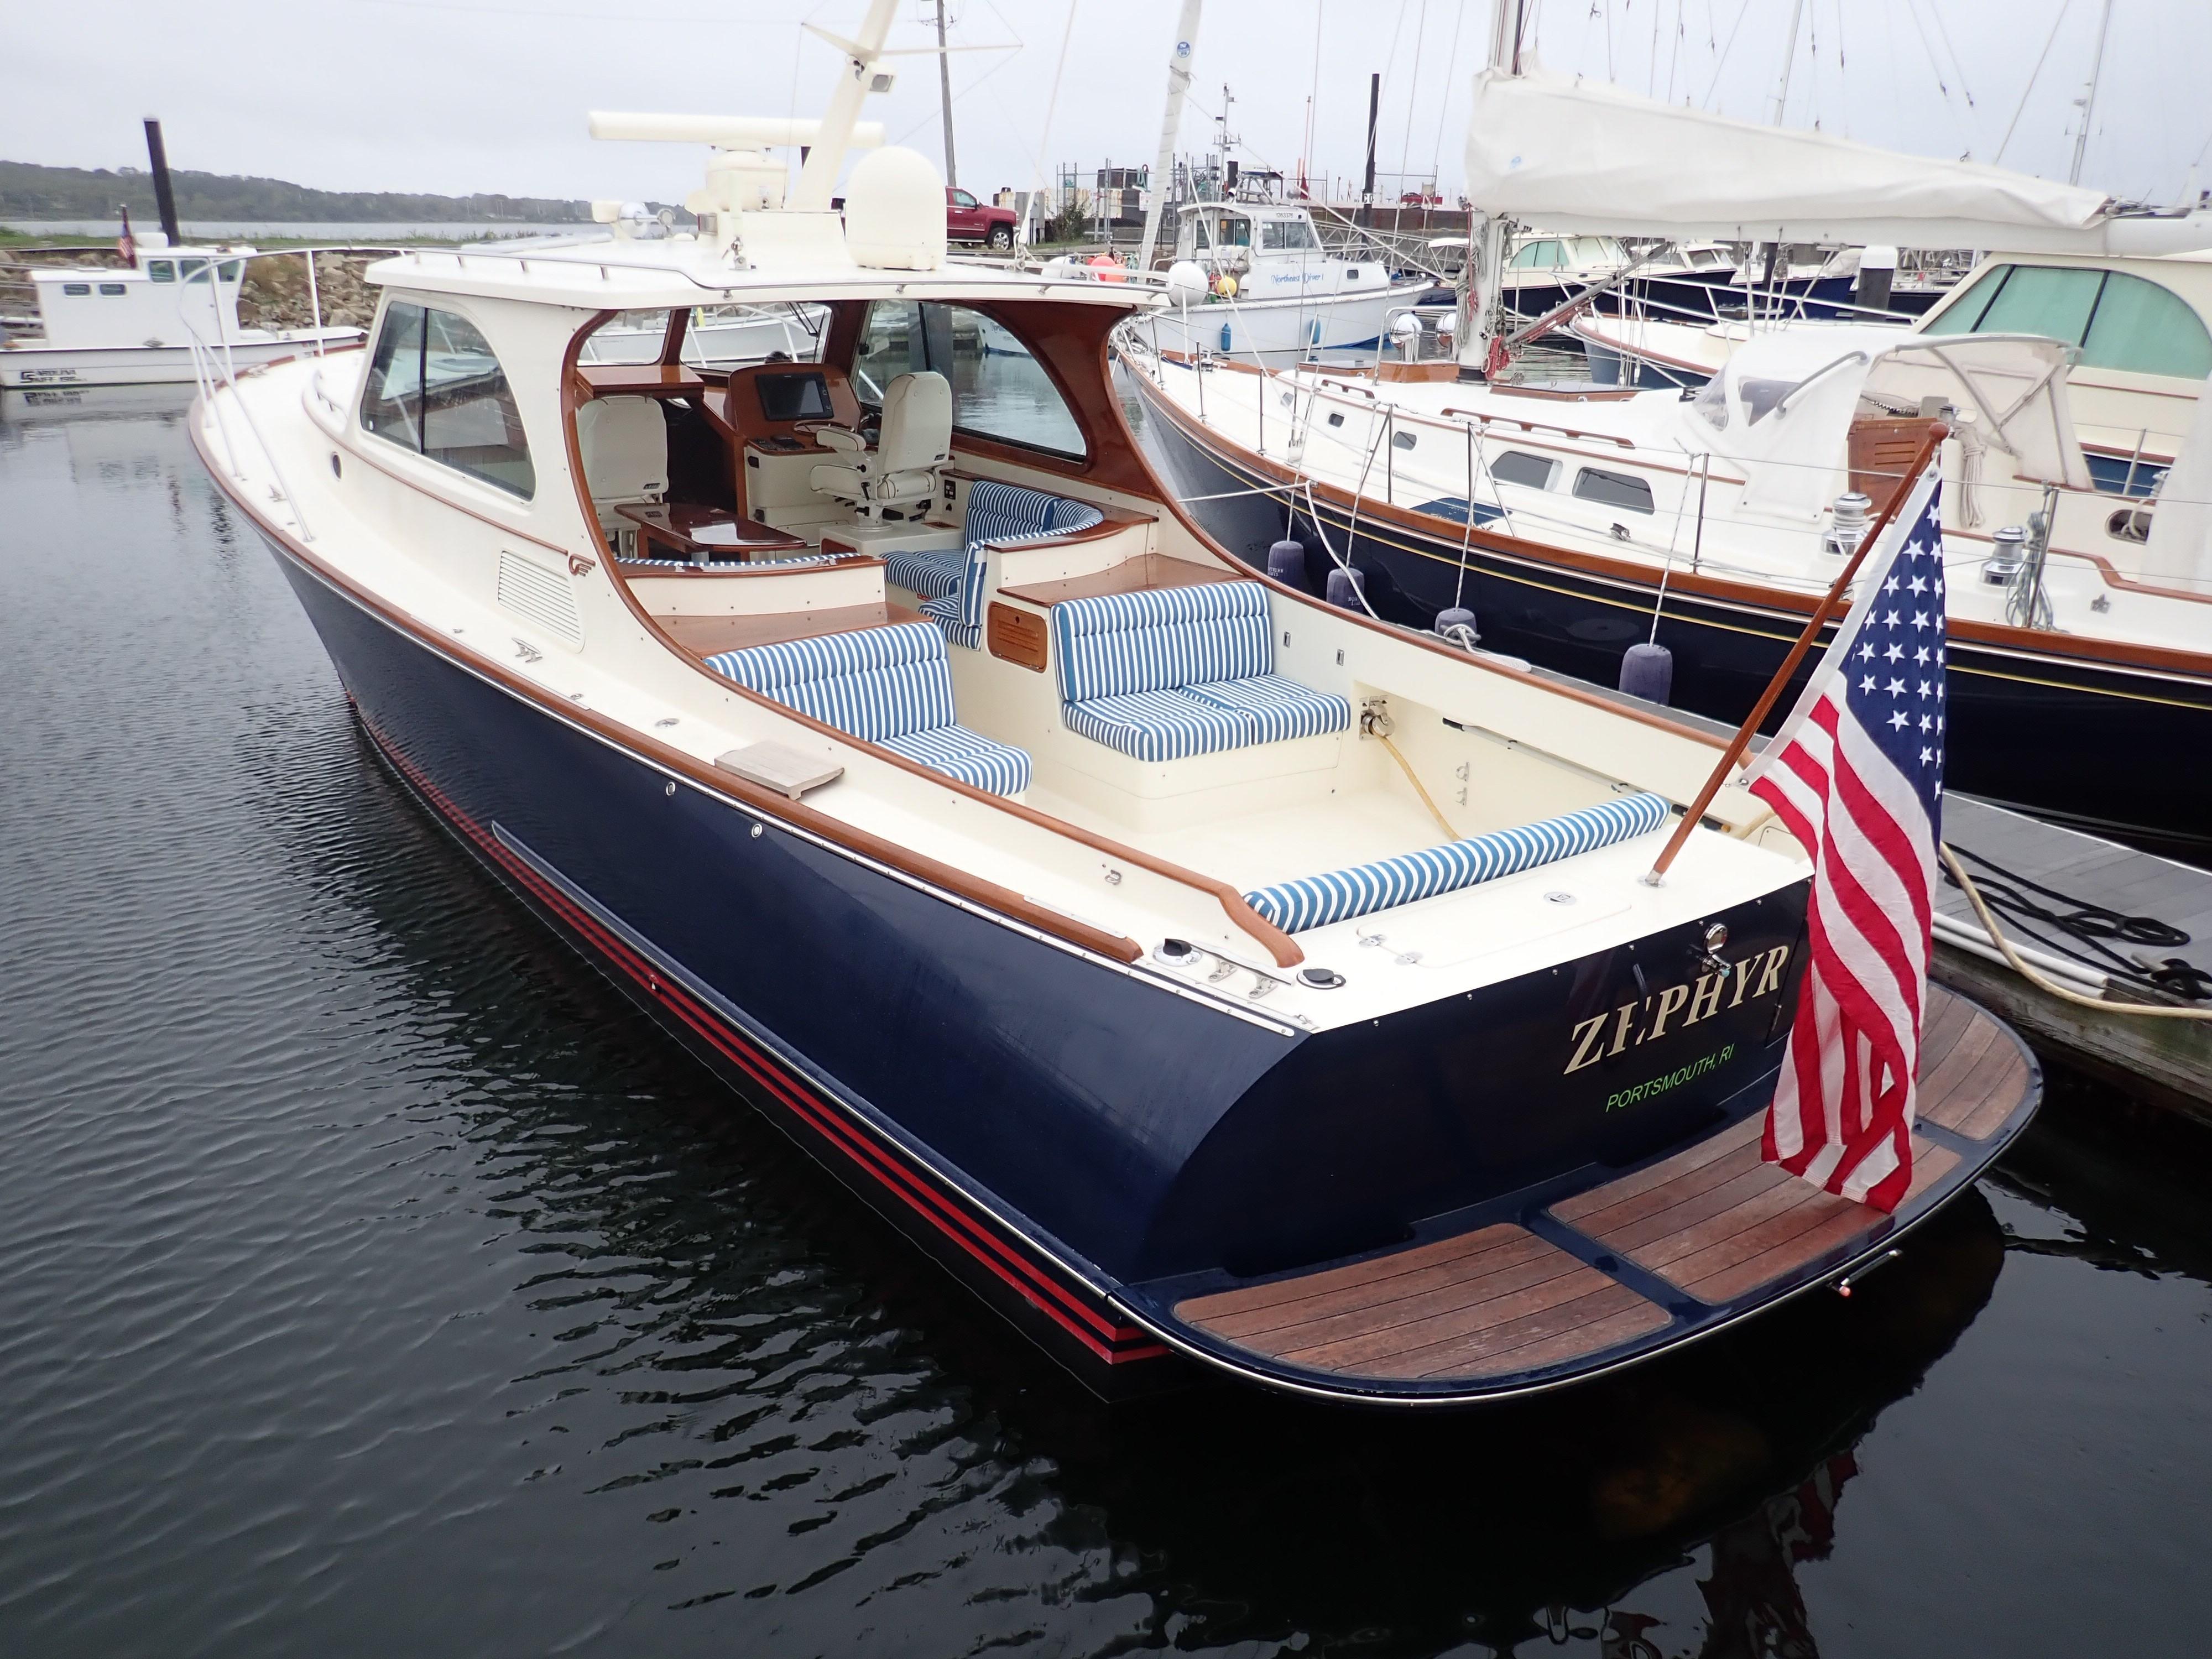 zephyr yacht for sale nz